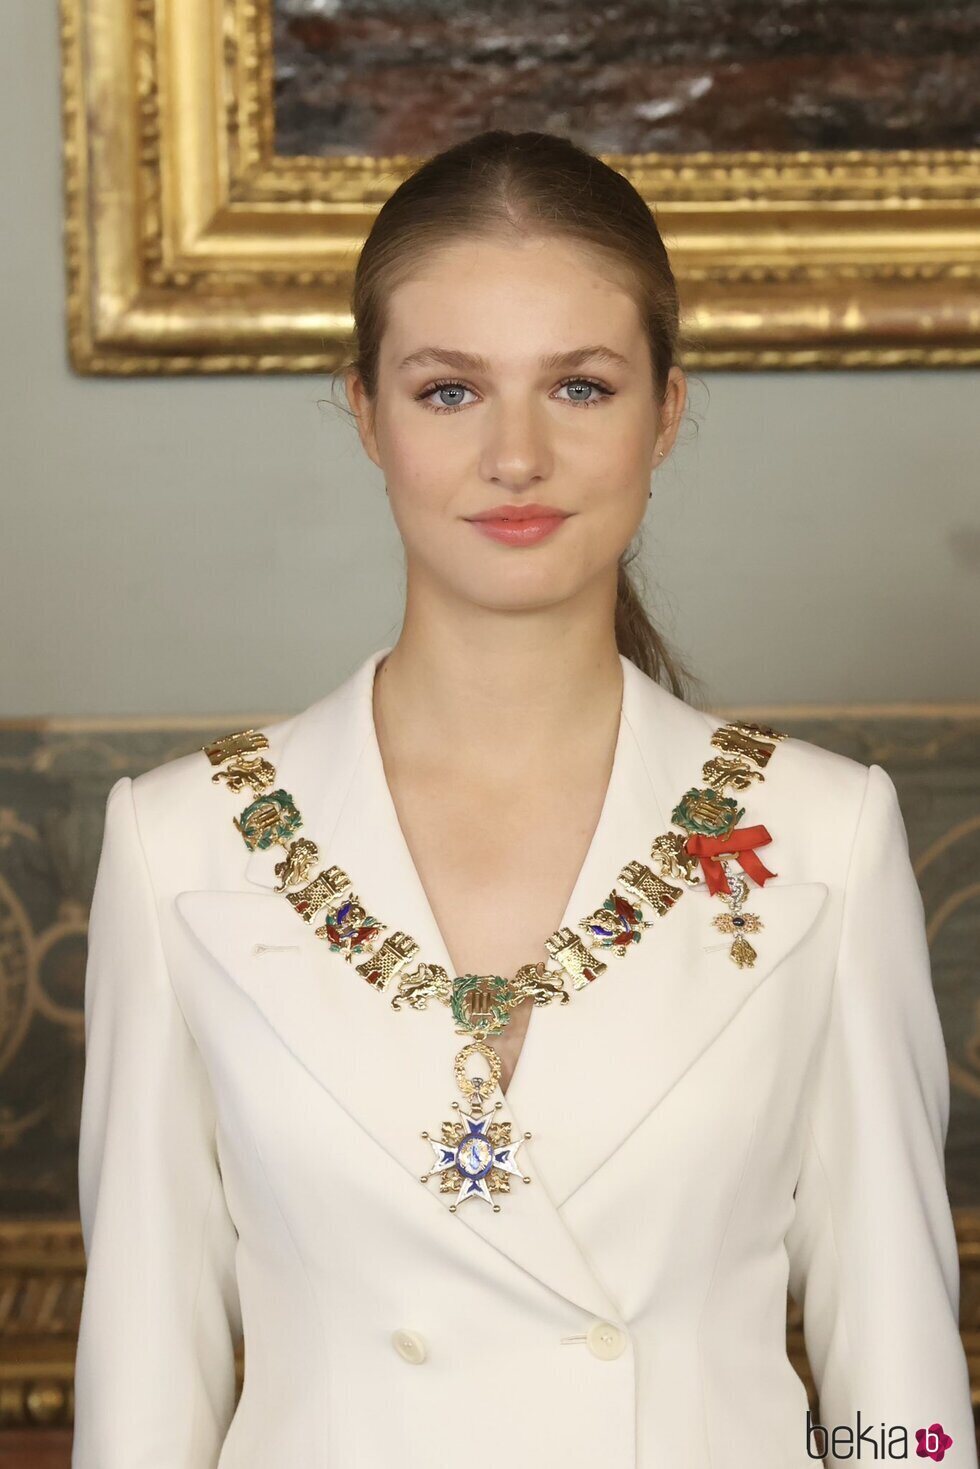 Foto oficial de la Princesa Leonor con el Collar de la Orden de Carlos III